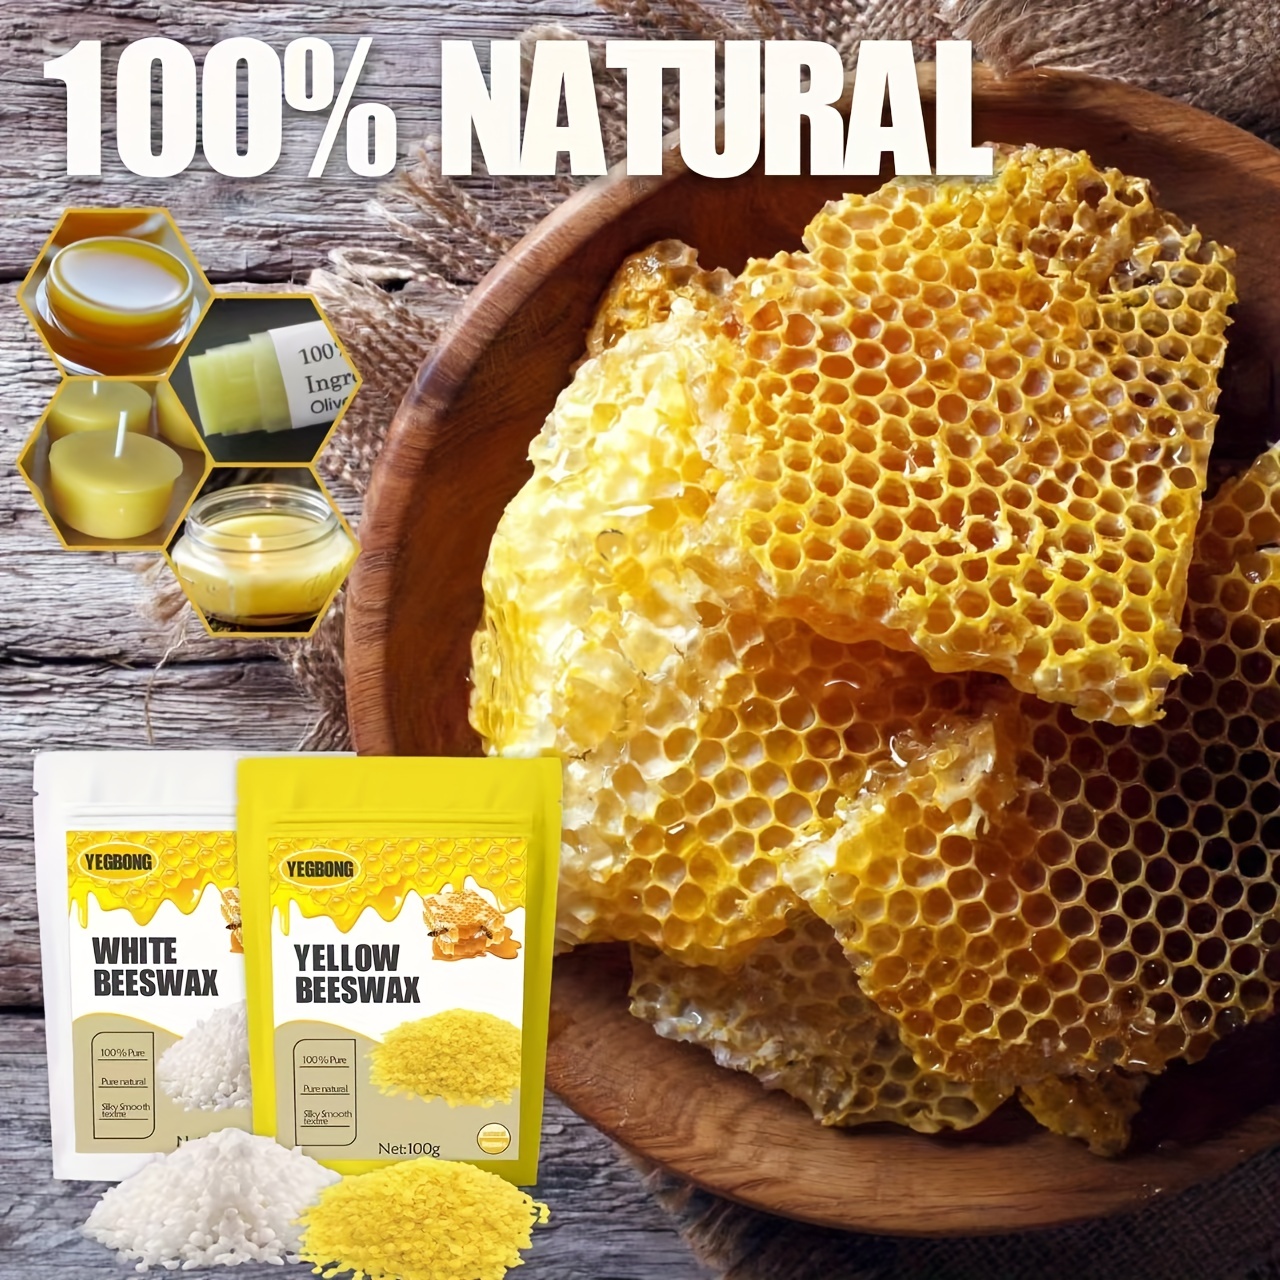 Natural Beeswax Pellets Multi purpose Cosmetic Material - Temu